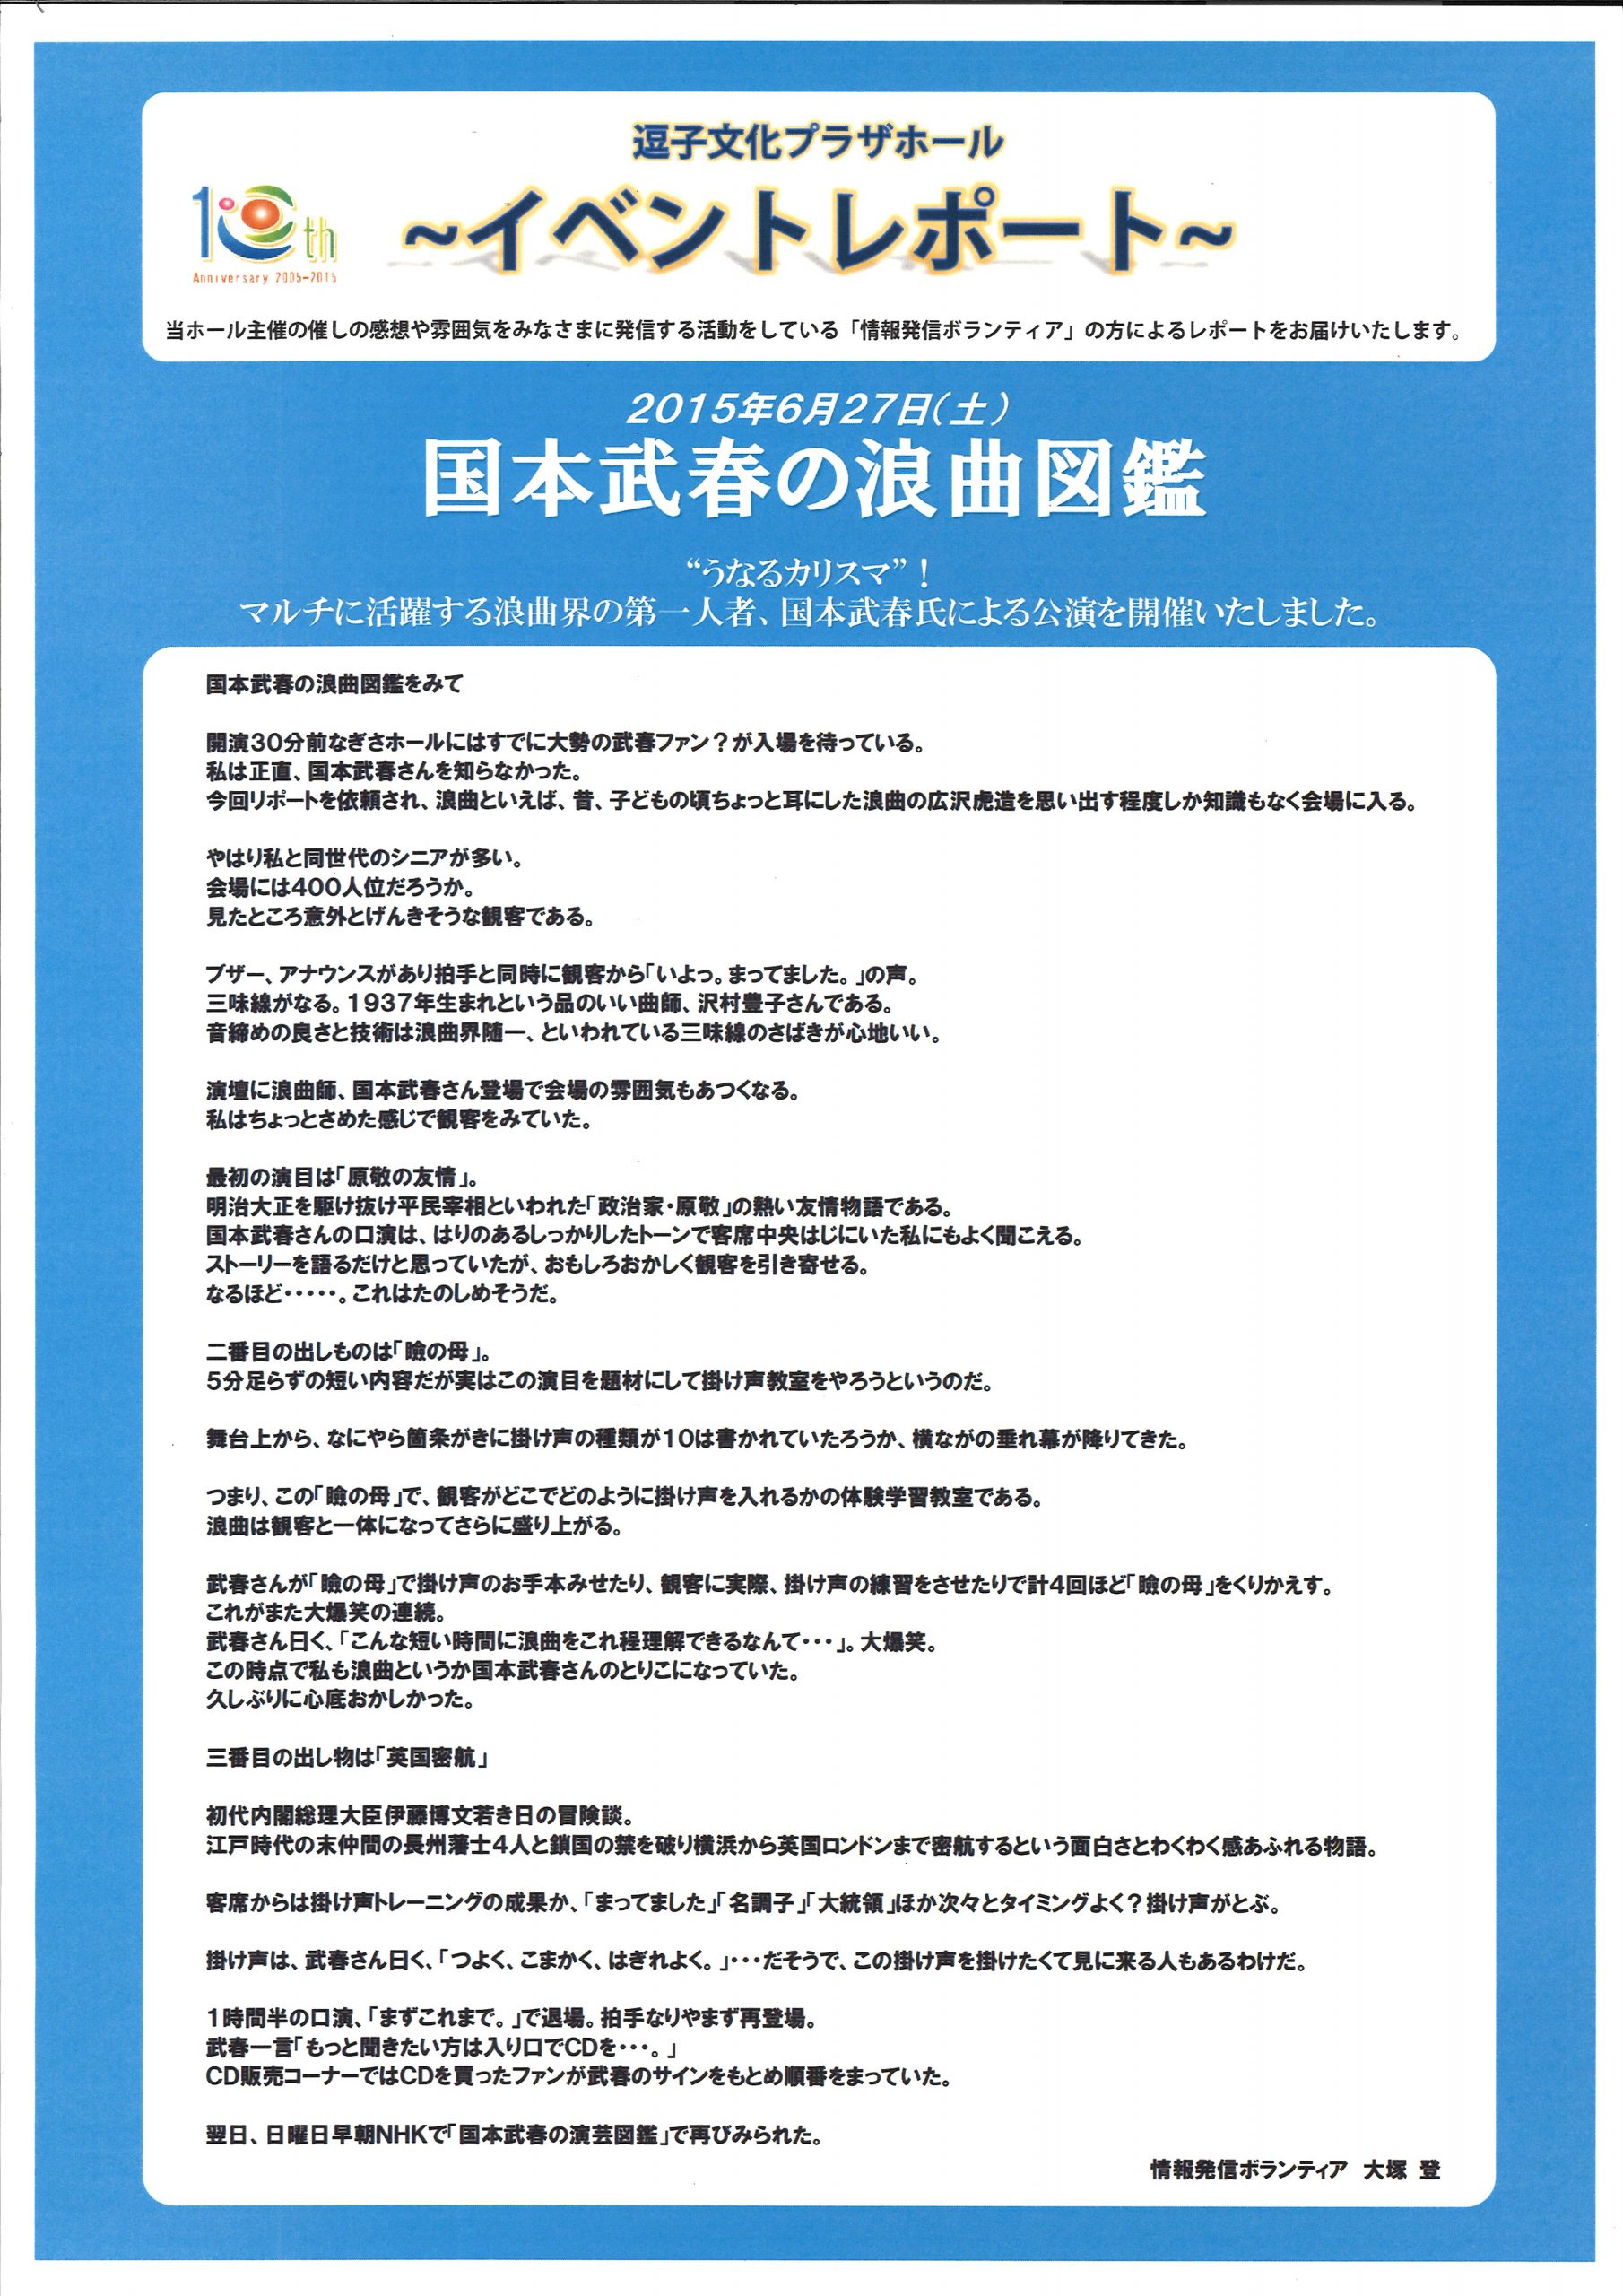 イベントレポート「国本武春の浪曲図鑑」2015年6月27日開催